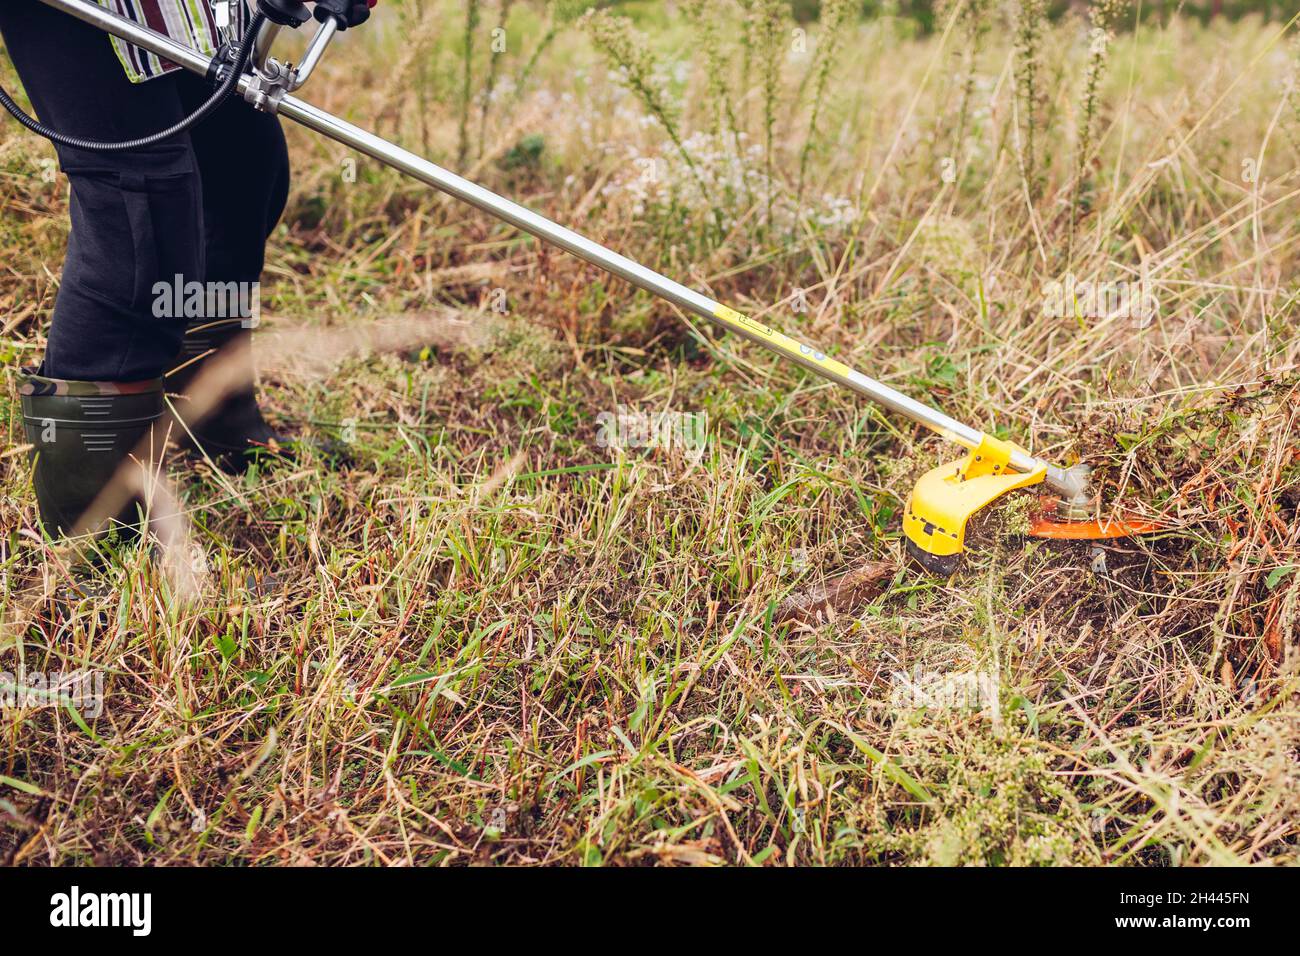 Gärtner mäht Unkraut mit einem Bürstenschneider. Arbeiter trimmen trockenes  Gras mit manuellem Benzin-Trimmer mit Metallklinge Scheibe Stockfotografie  - Alamy